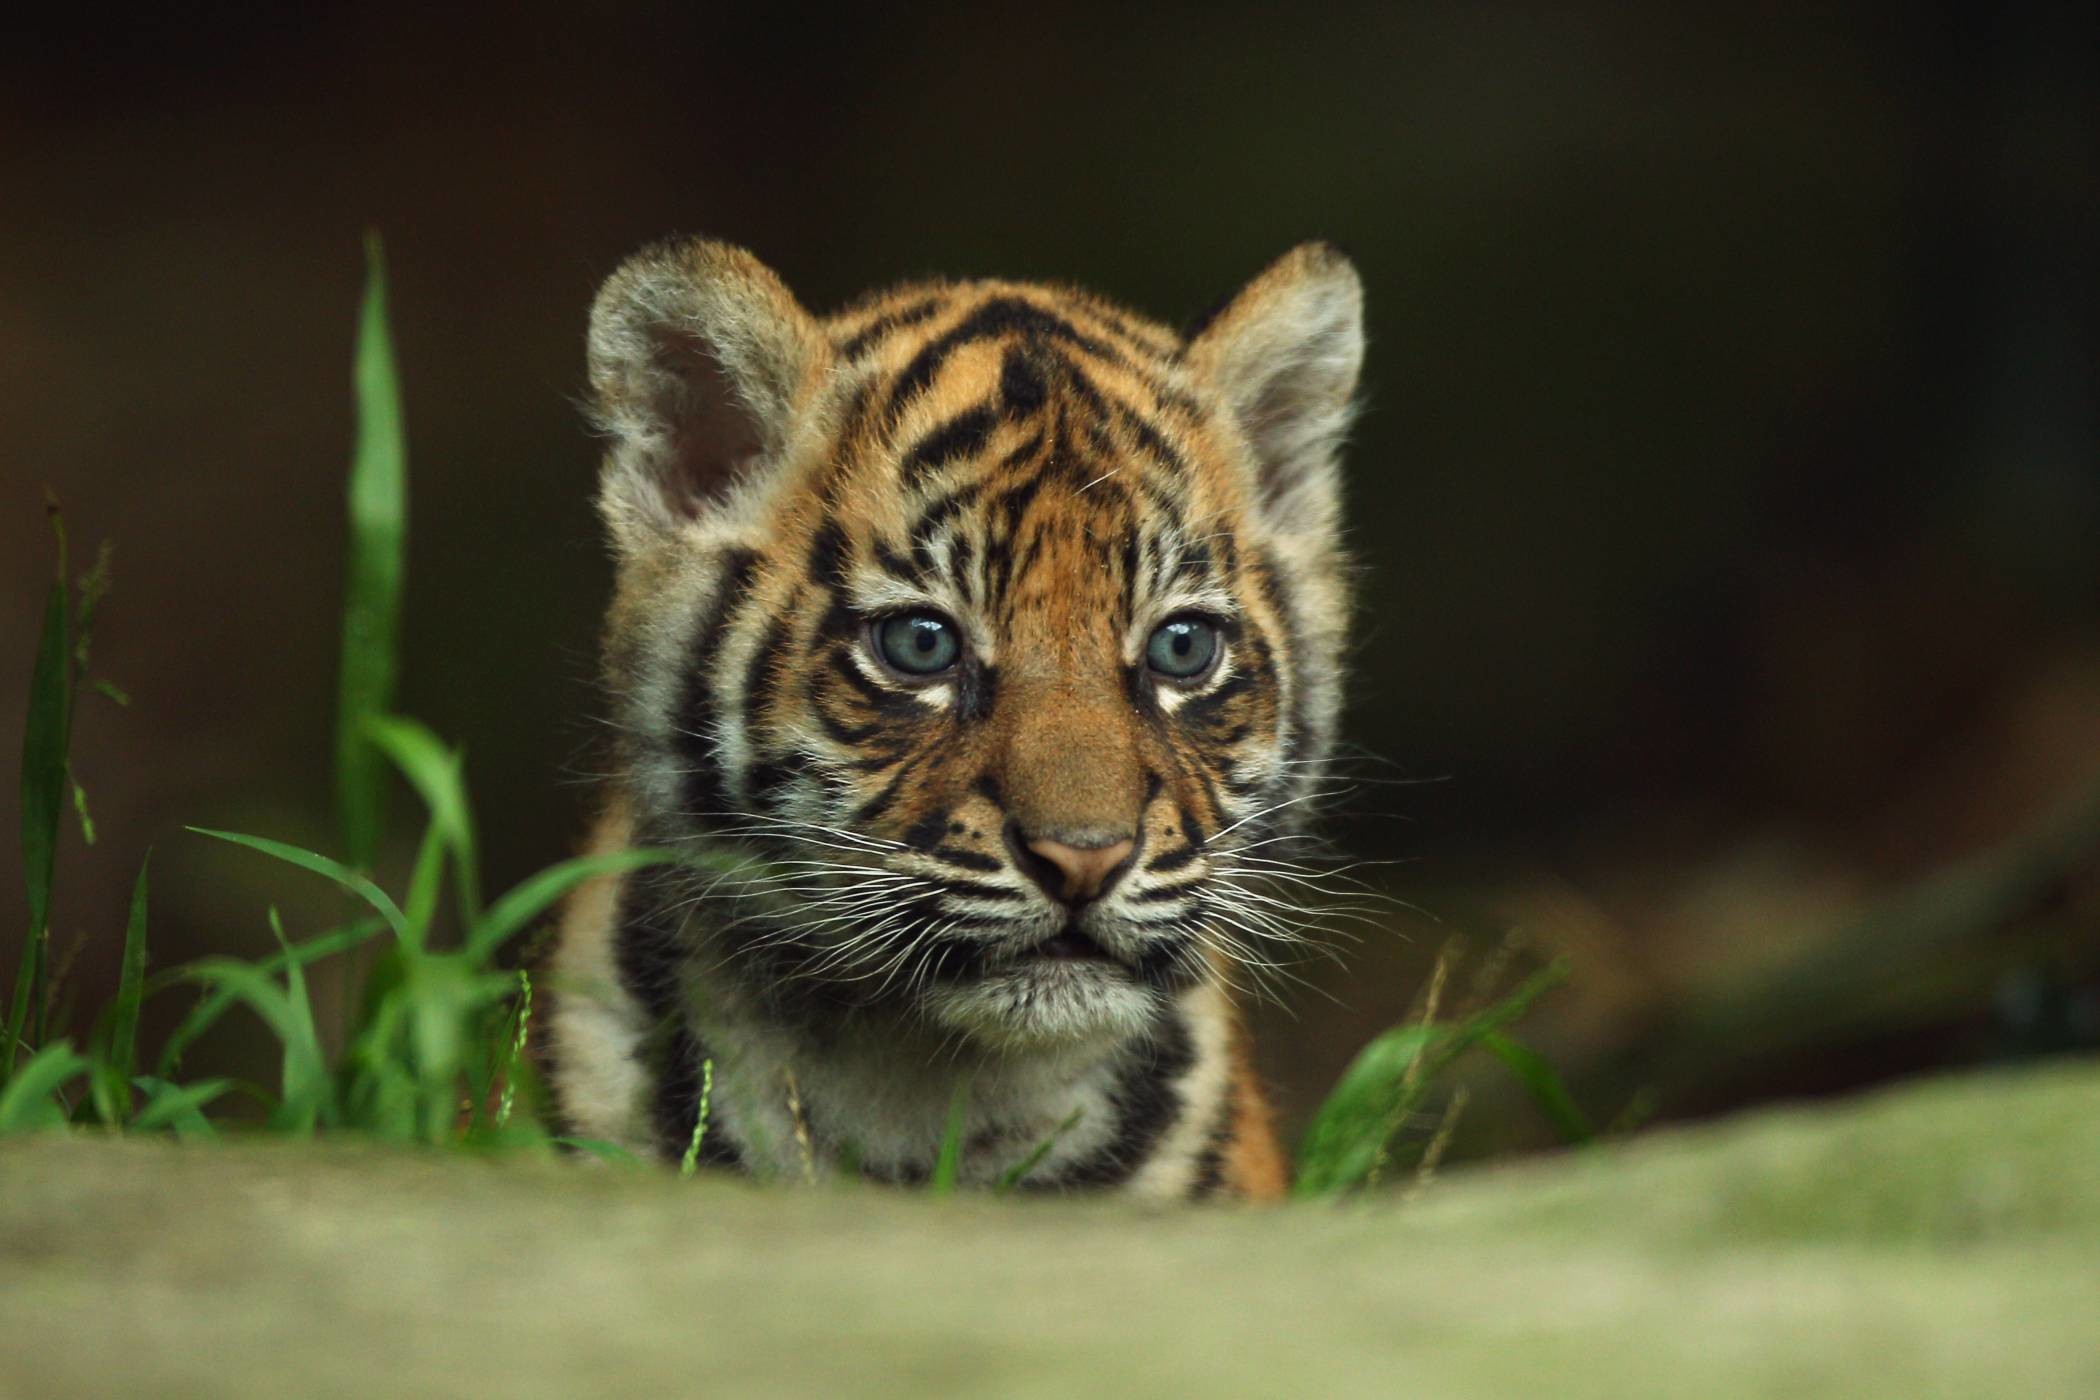 baby tiger tapete,tierwelt,landtier,tiger,bengalischer tiger,schnurrhaare